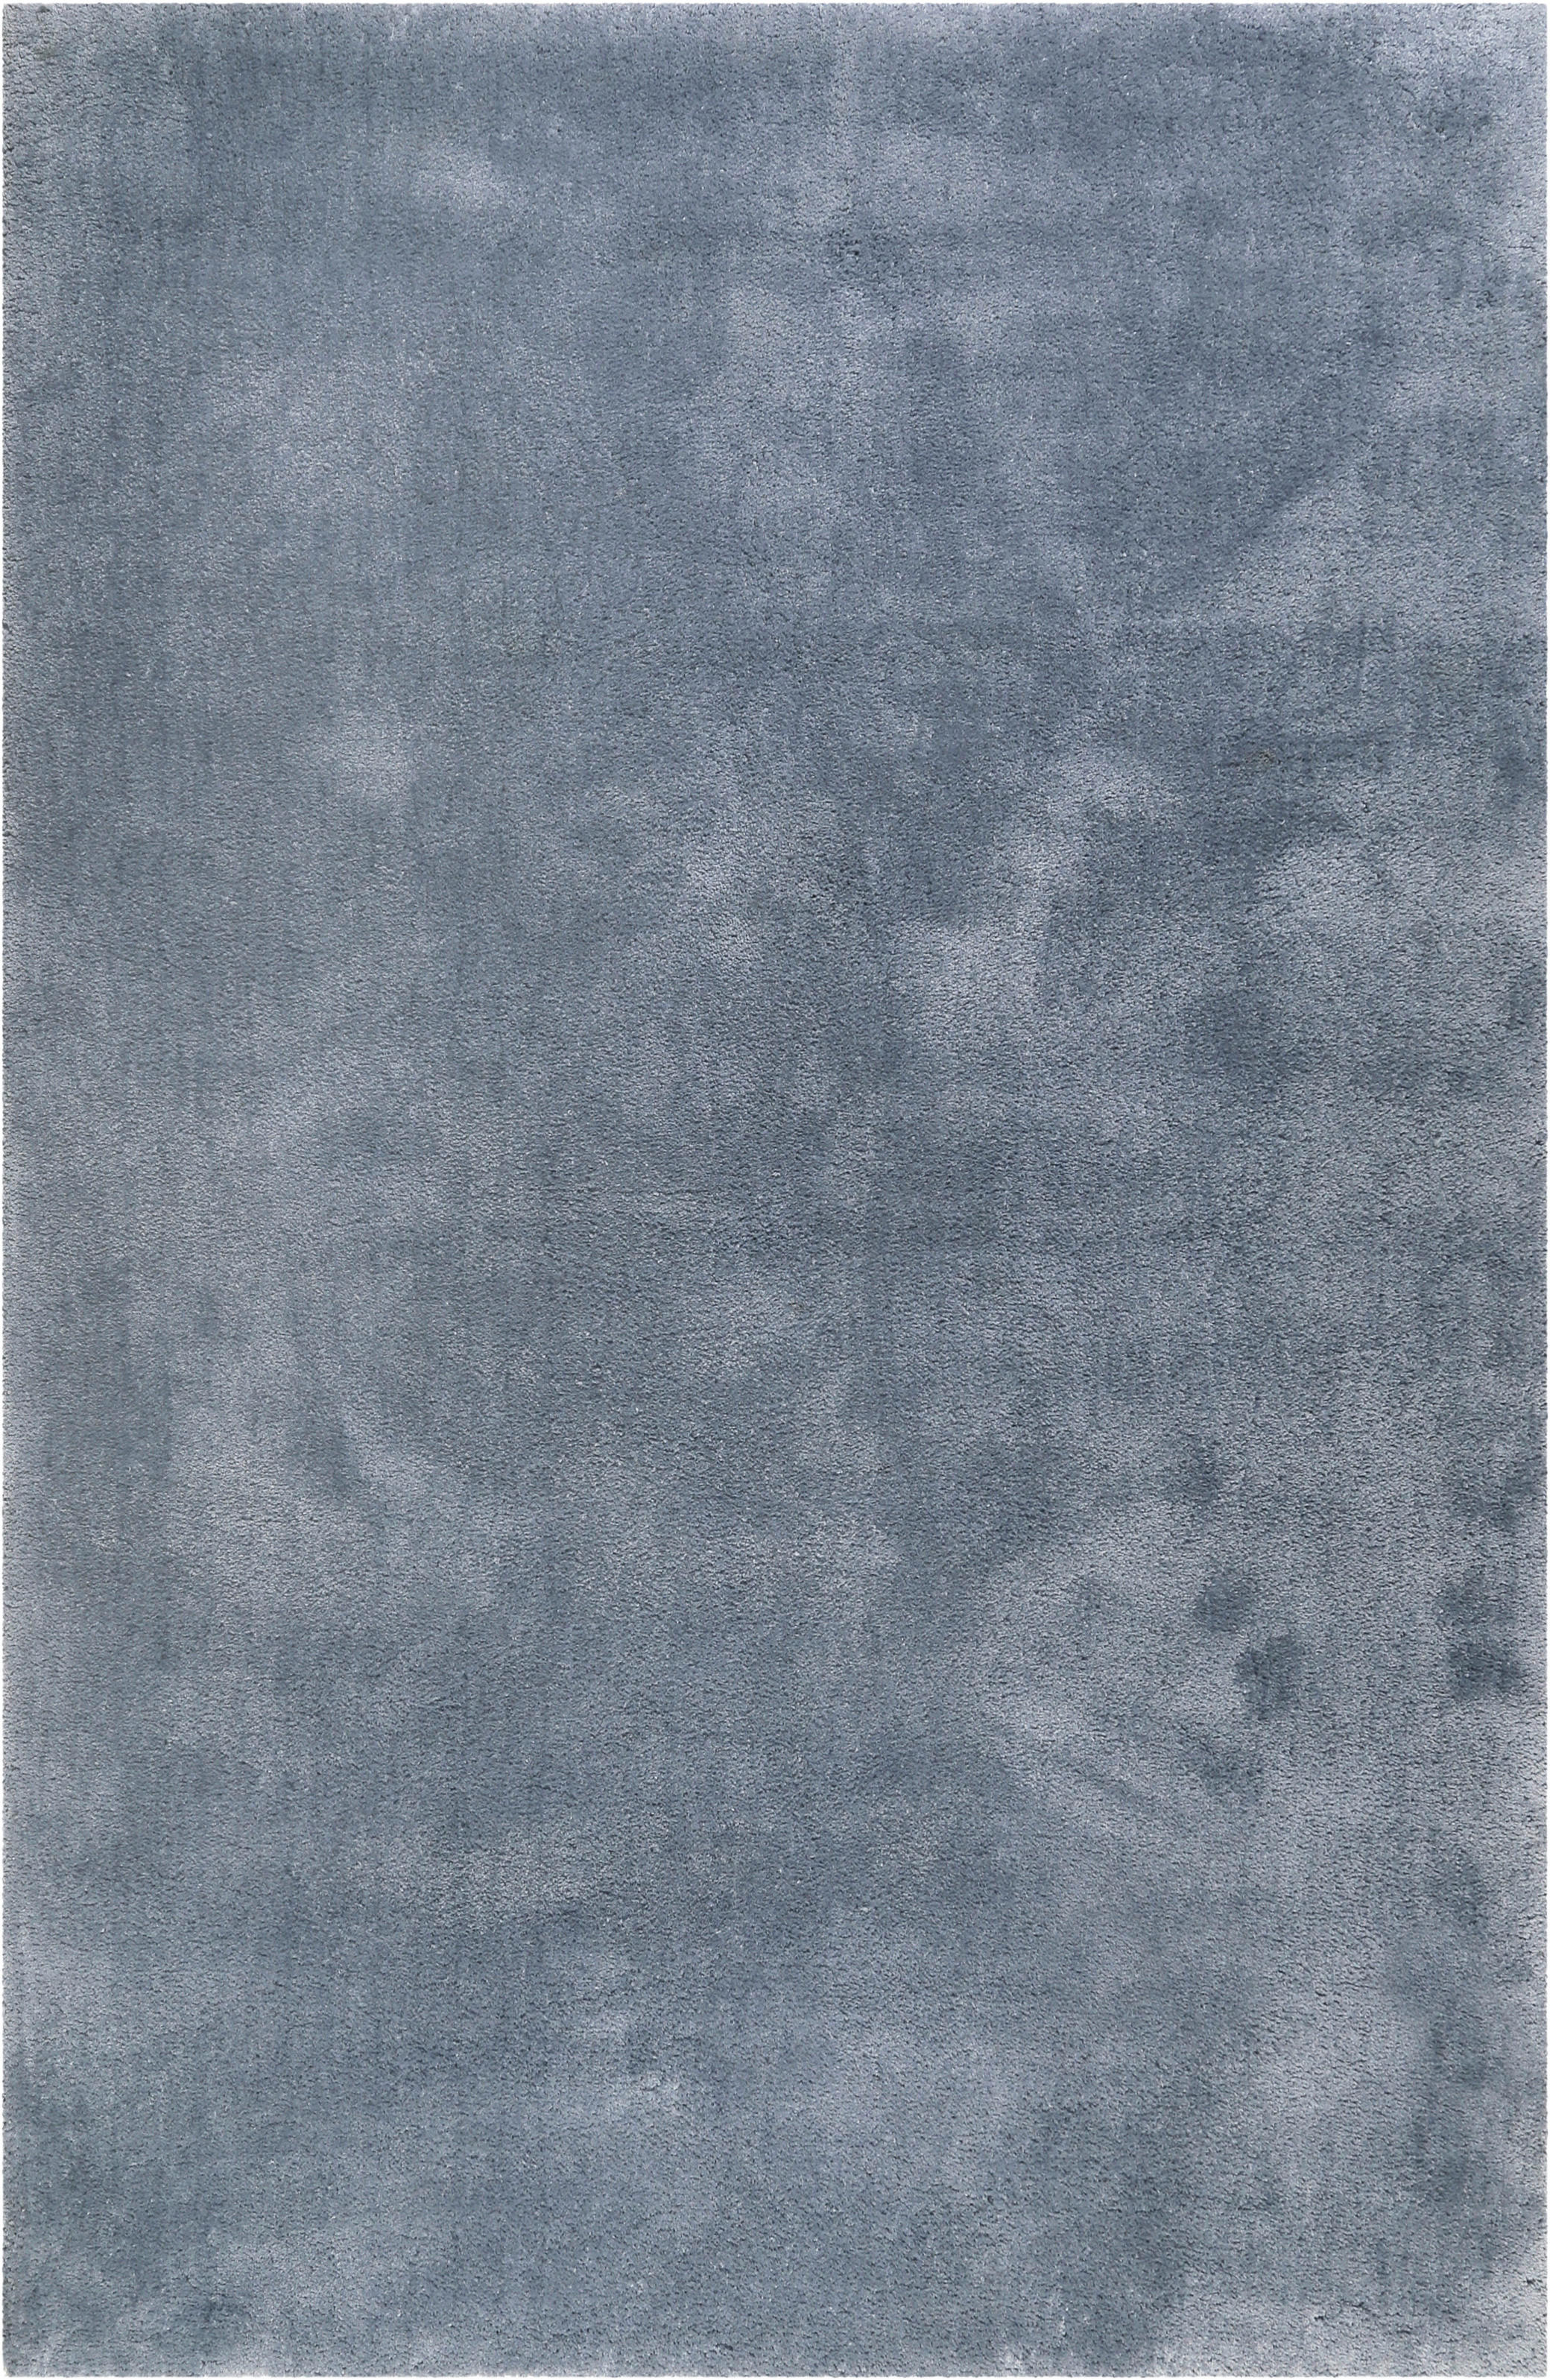 HOCHFLORTEPPICH  80/150 cm  getuftet  Blau, Grau   - Blau/Grau, Basics, Textil (80/150cm) - Esprit